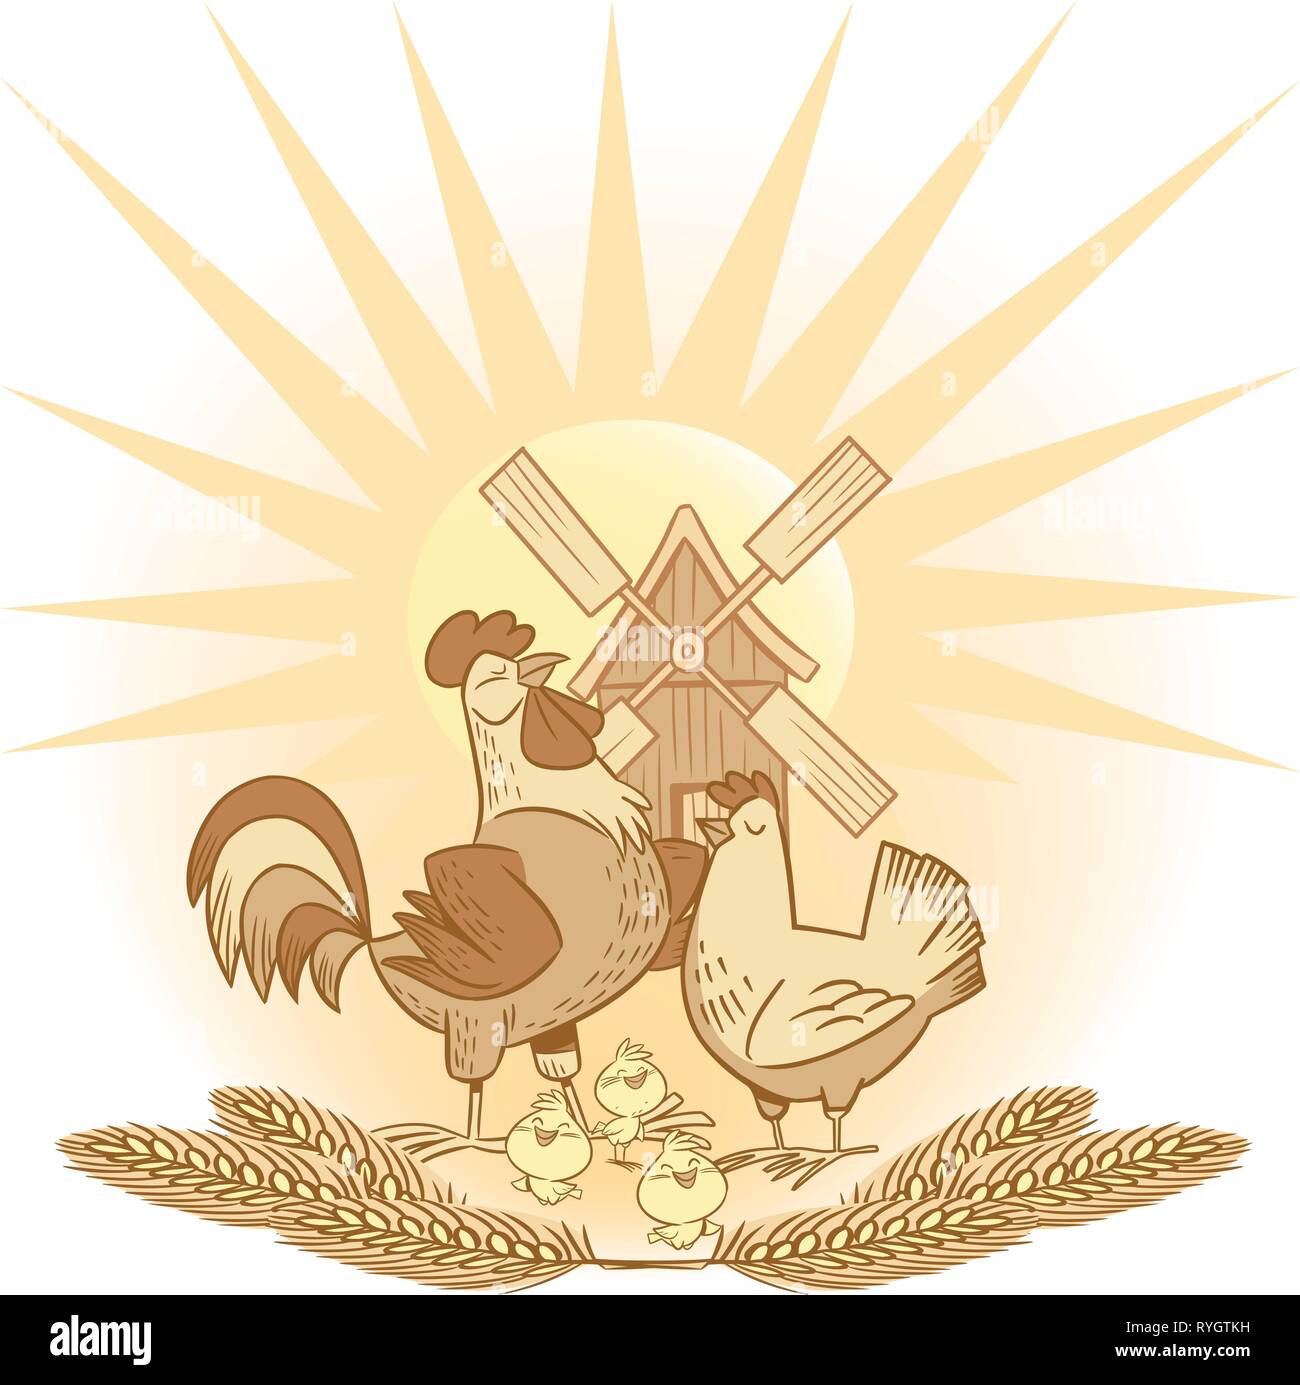 Die Abbildung zeigt eine Gruppe von Hühnern und Hühner, Weizenähren auf dem Hintergrund der Sonne und Windmühle. Abbildung auf separaten Ebenen getan. Stock Vektor